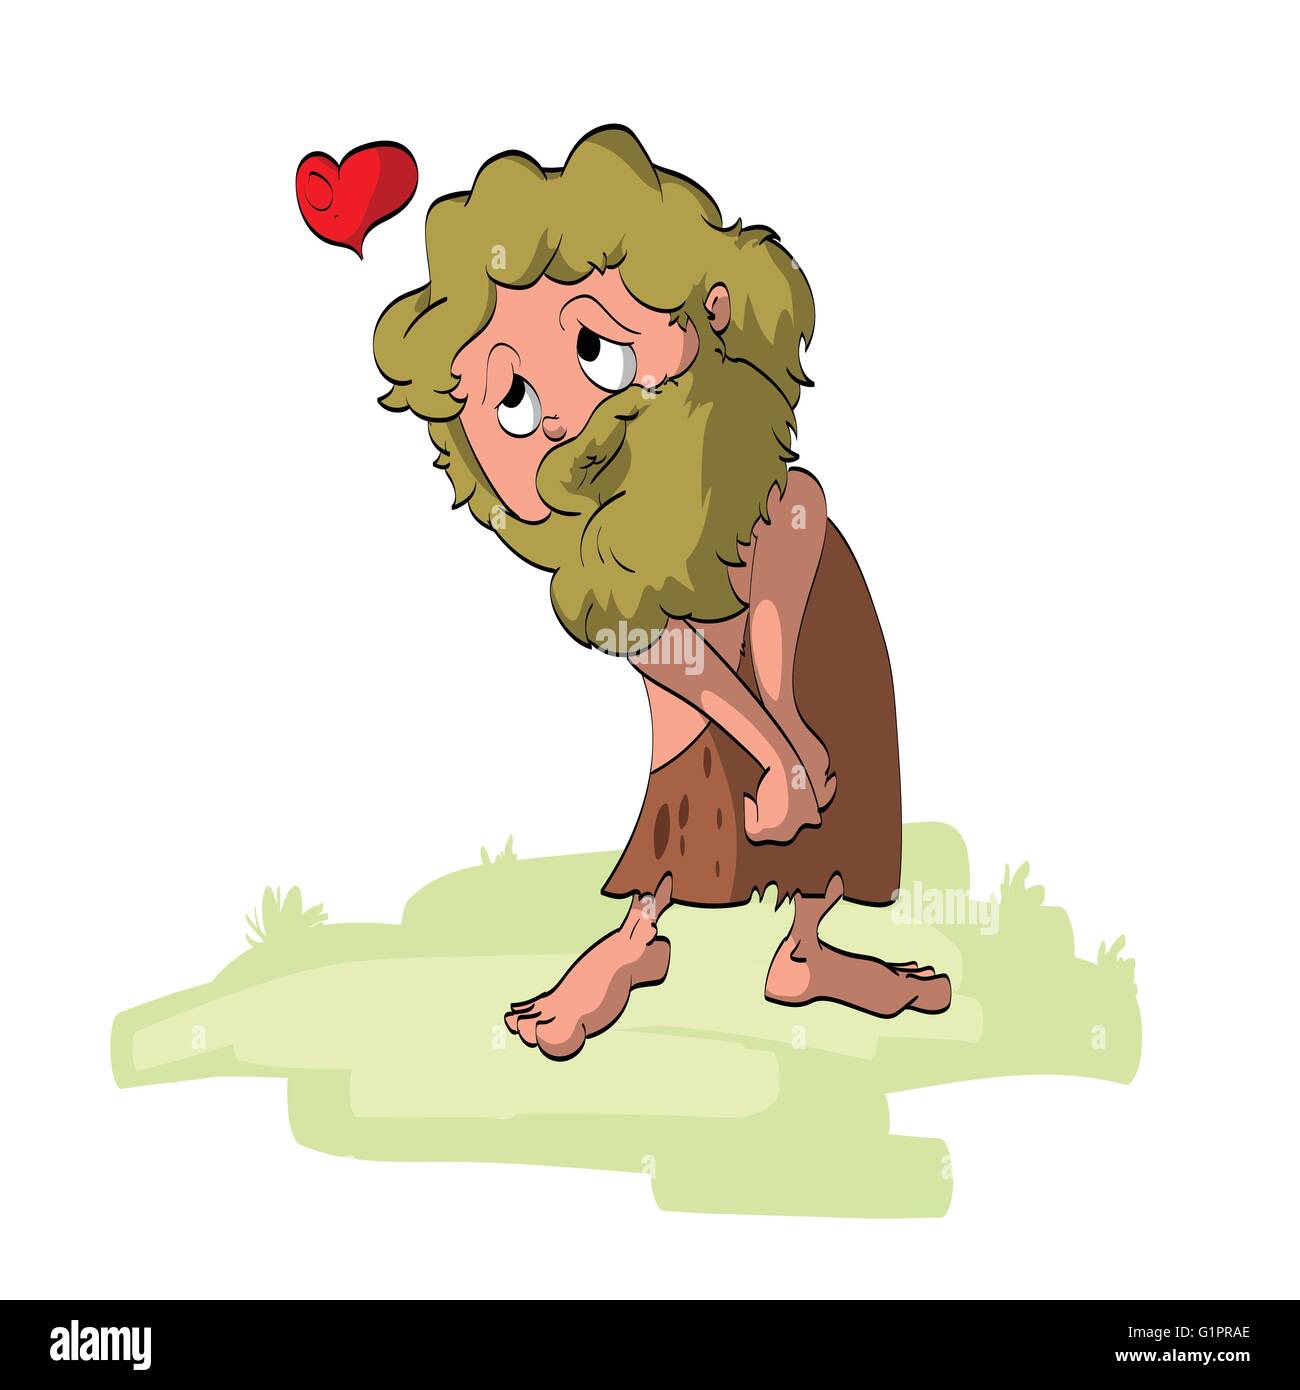 Illustrazione vettoriale di un cartoon caveman in amore Illustrazione Vettoriale